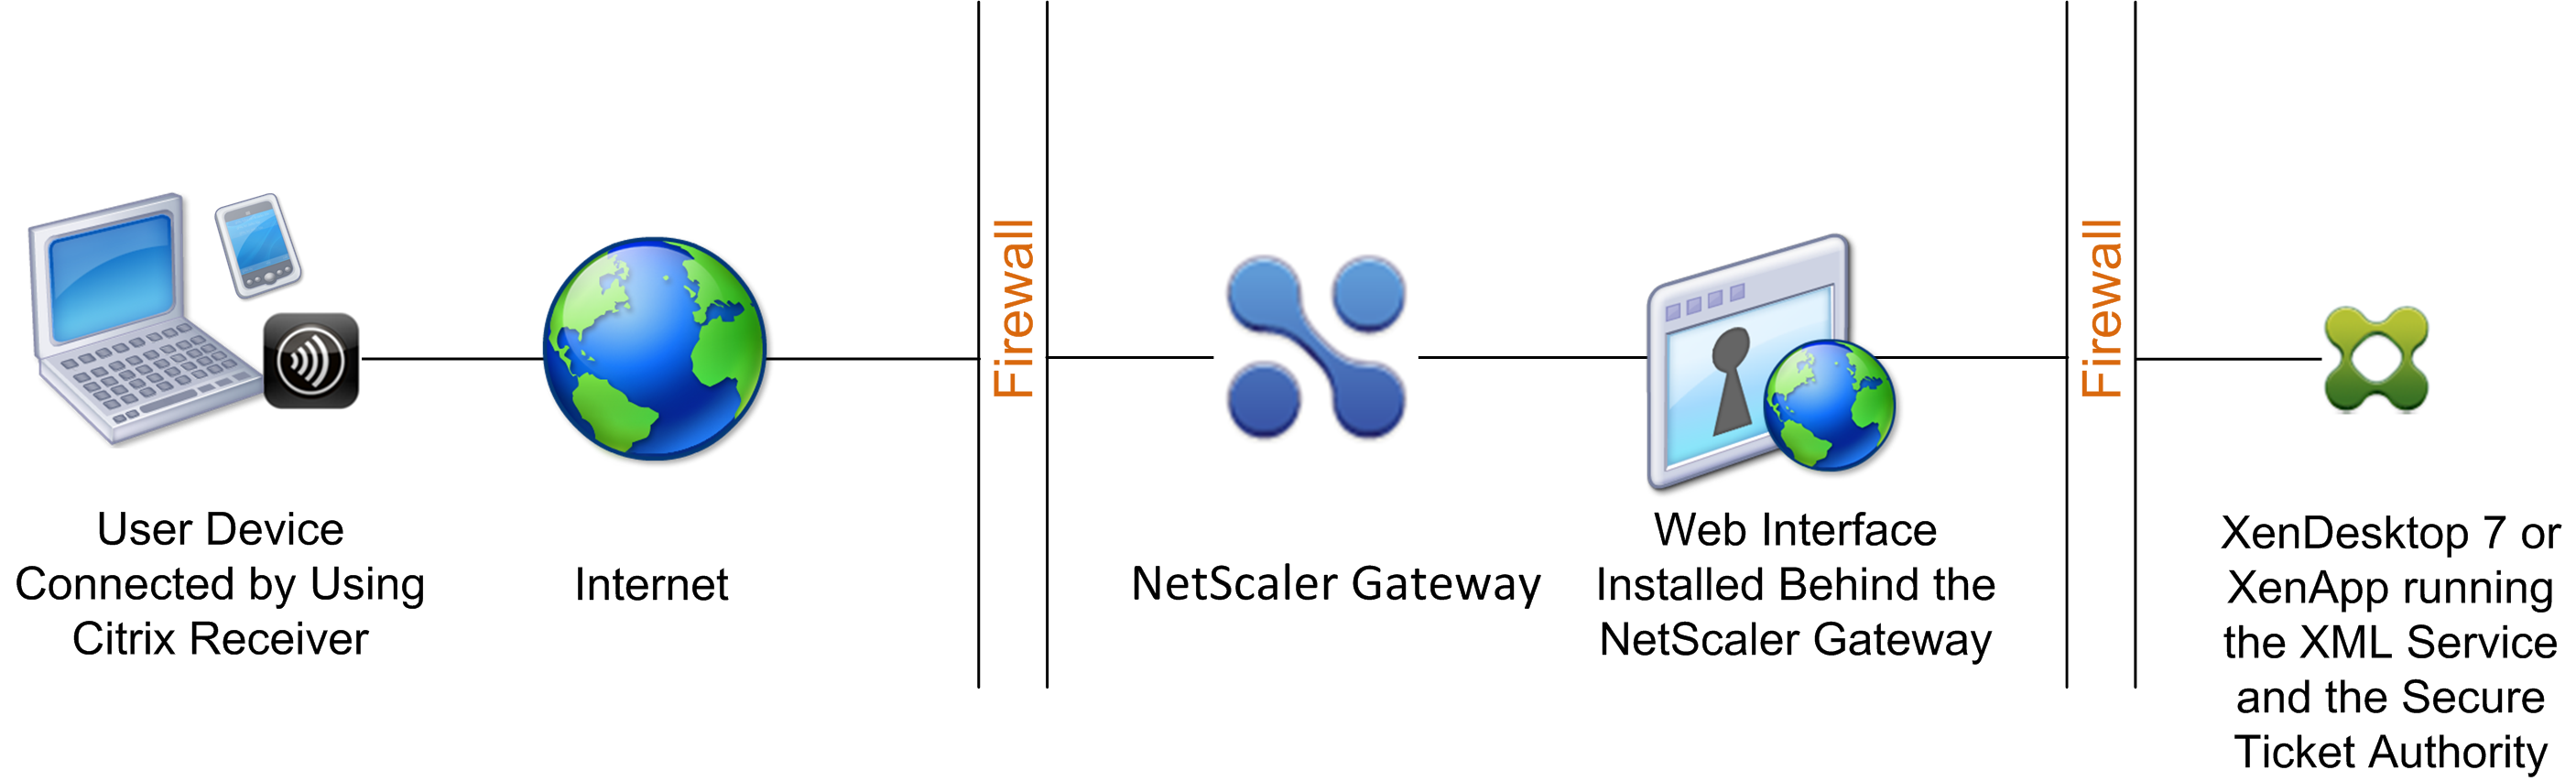 Interfaz Web detrás de Citrix Gateway en la DMZ